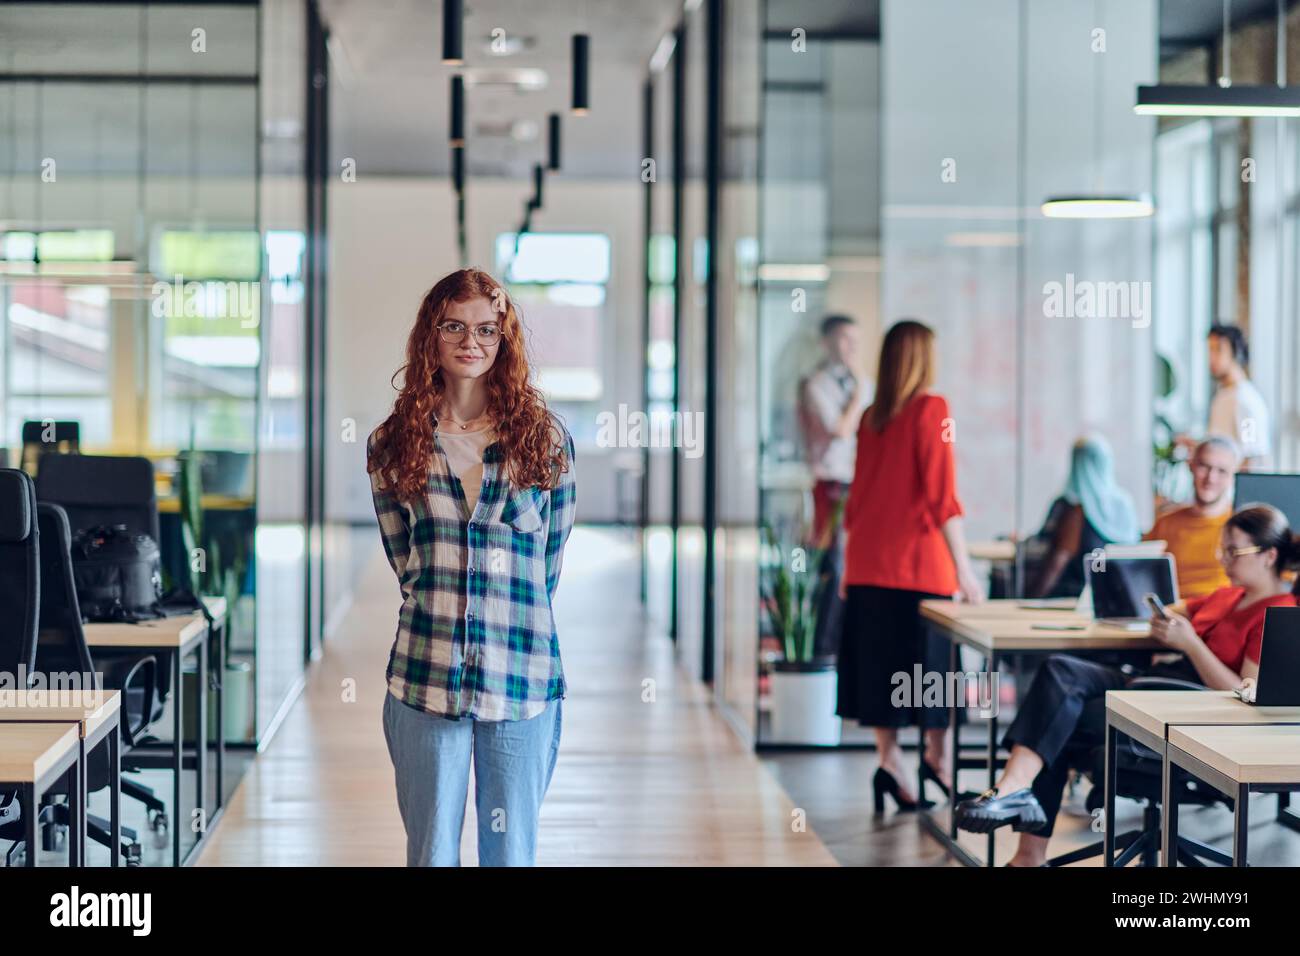 Le portrait d'une jeune femme d'affaires aux cheveux orange modernes capture sa présence bien serrée dans le couloir d'une startup contemporaine Banque D'Images